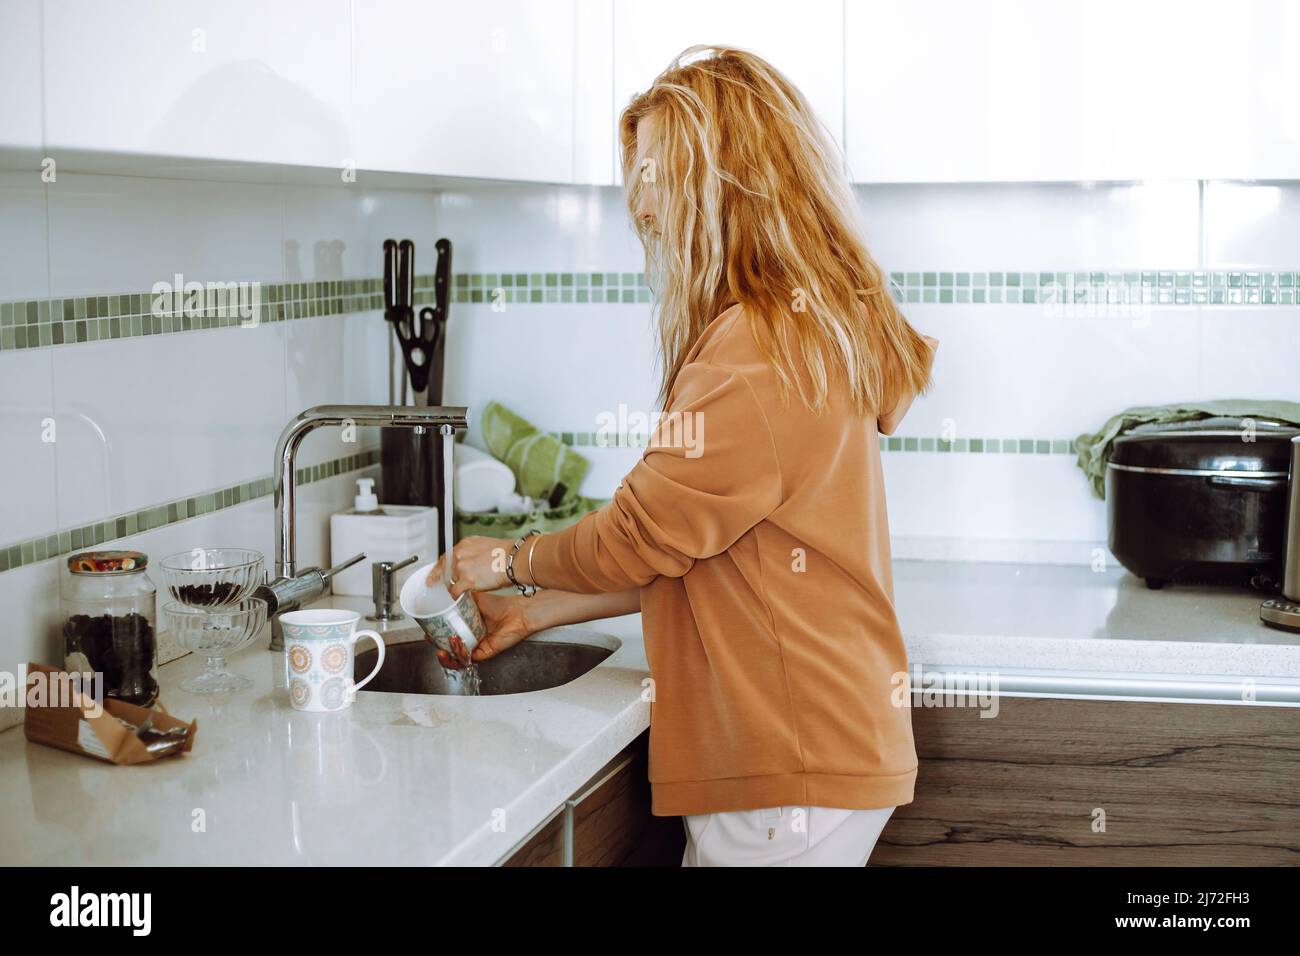 Femme blonde aux cheveux longs dans des vêtements décontractés, laver la vaisselle dans l'évier, dans la cuisine blanche. Femme au foyer et mère à la maison Banque D'Images